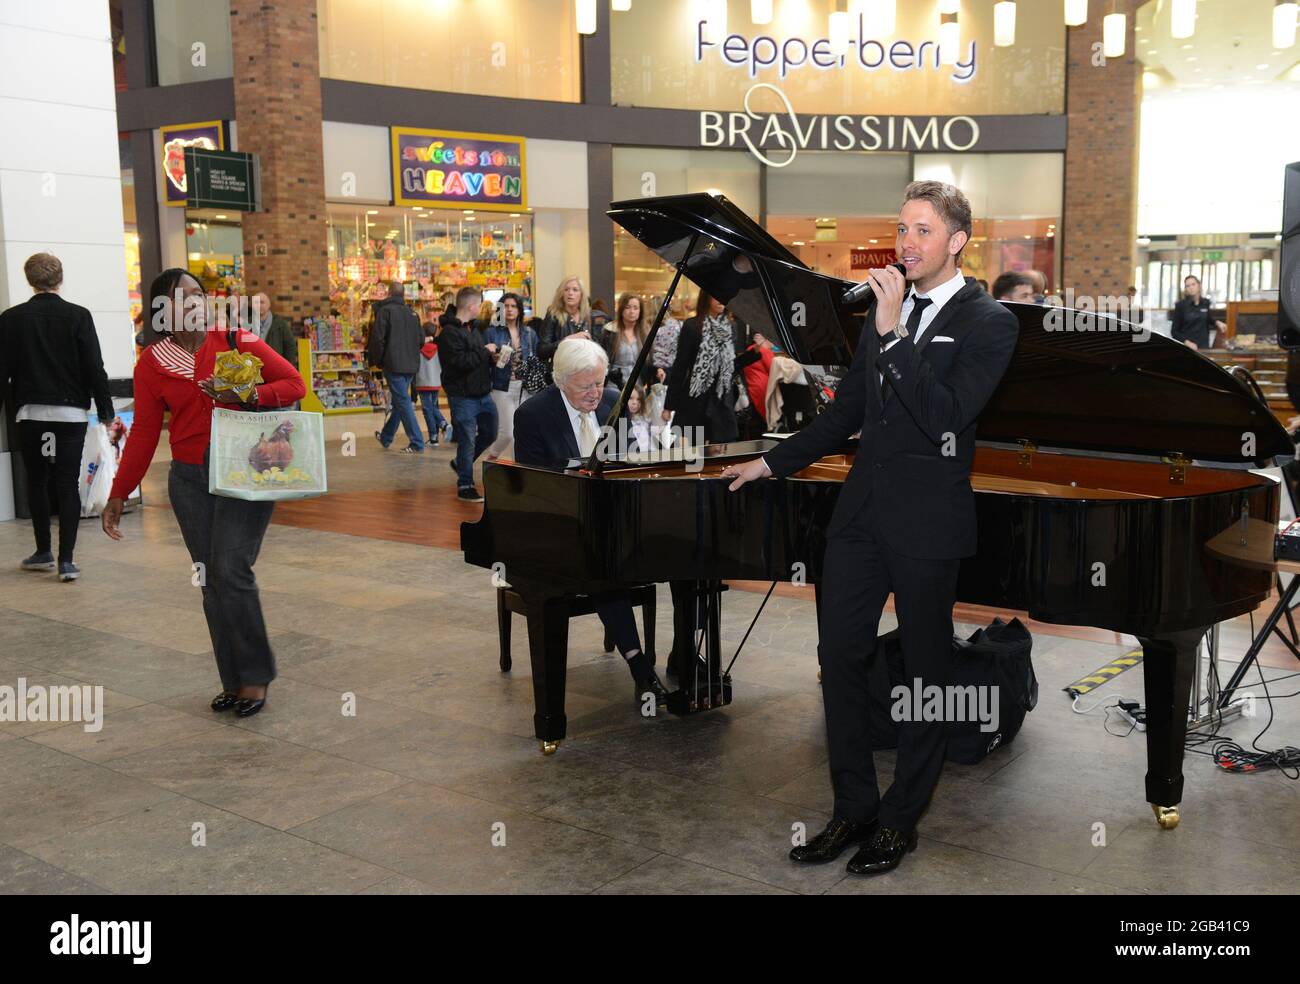 El vocalista Jordan Williams y el pianista de jazz Brian Dee entretiene a los compradores en Touchwood Shopping Center, Solihull, Gran Bretaña, Reino Unido Foto de stock